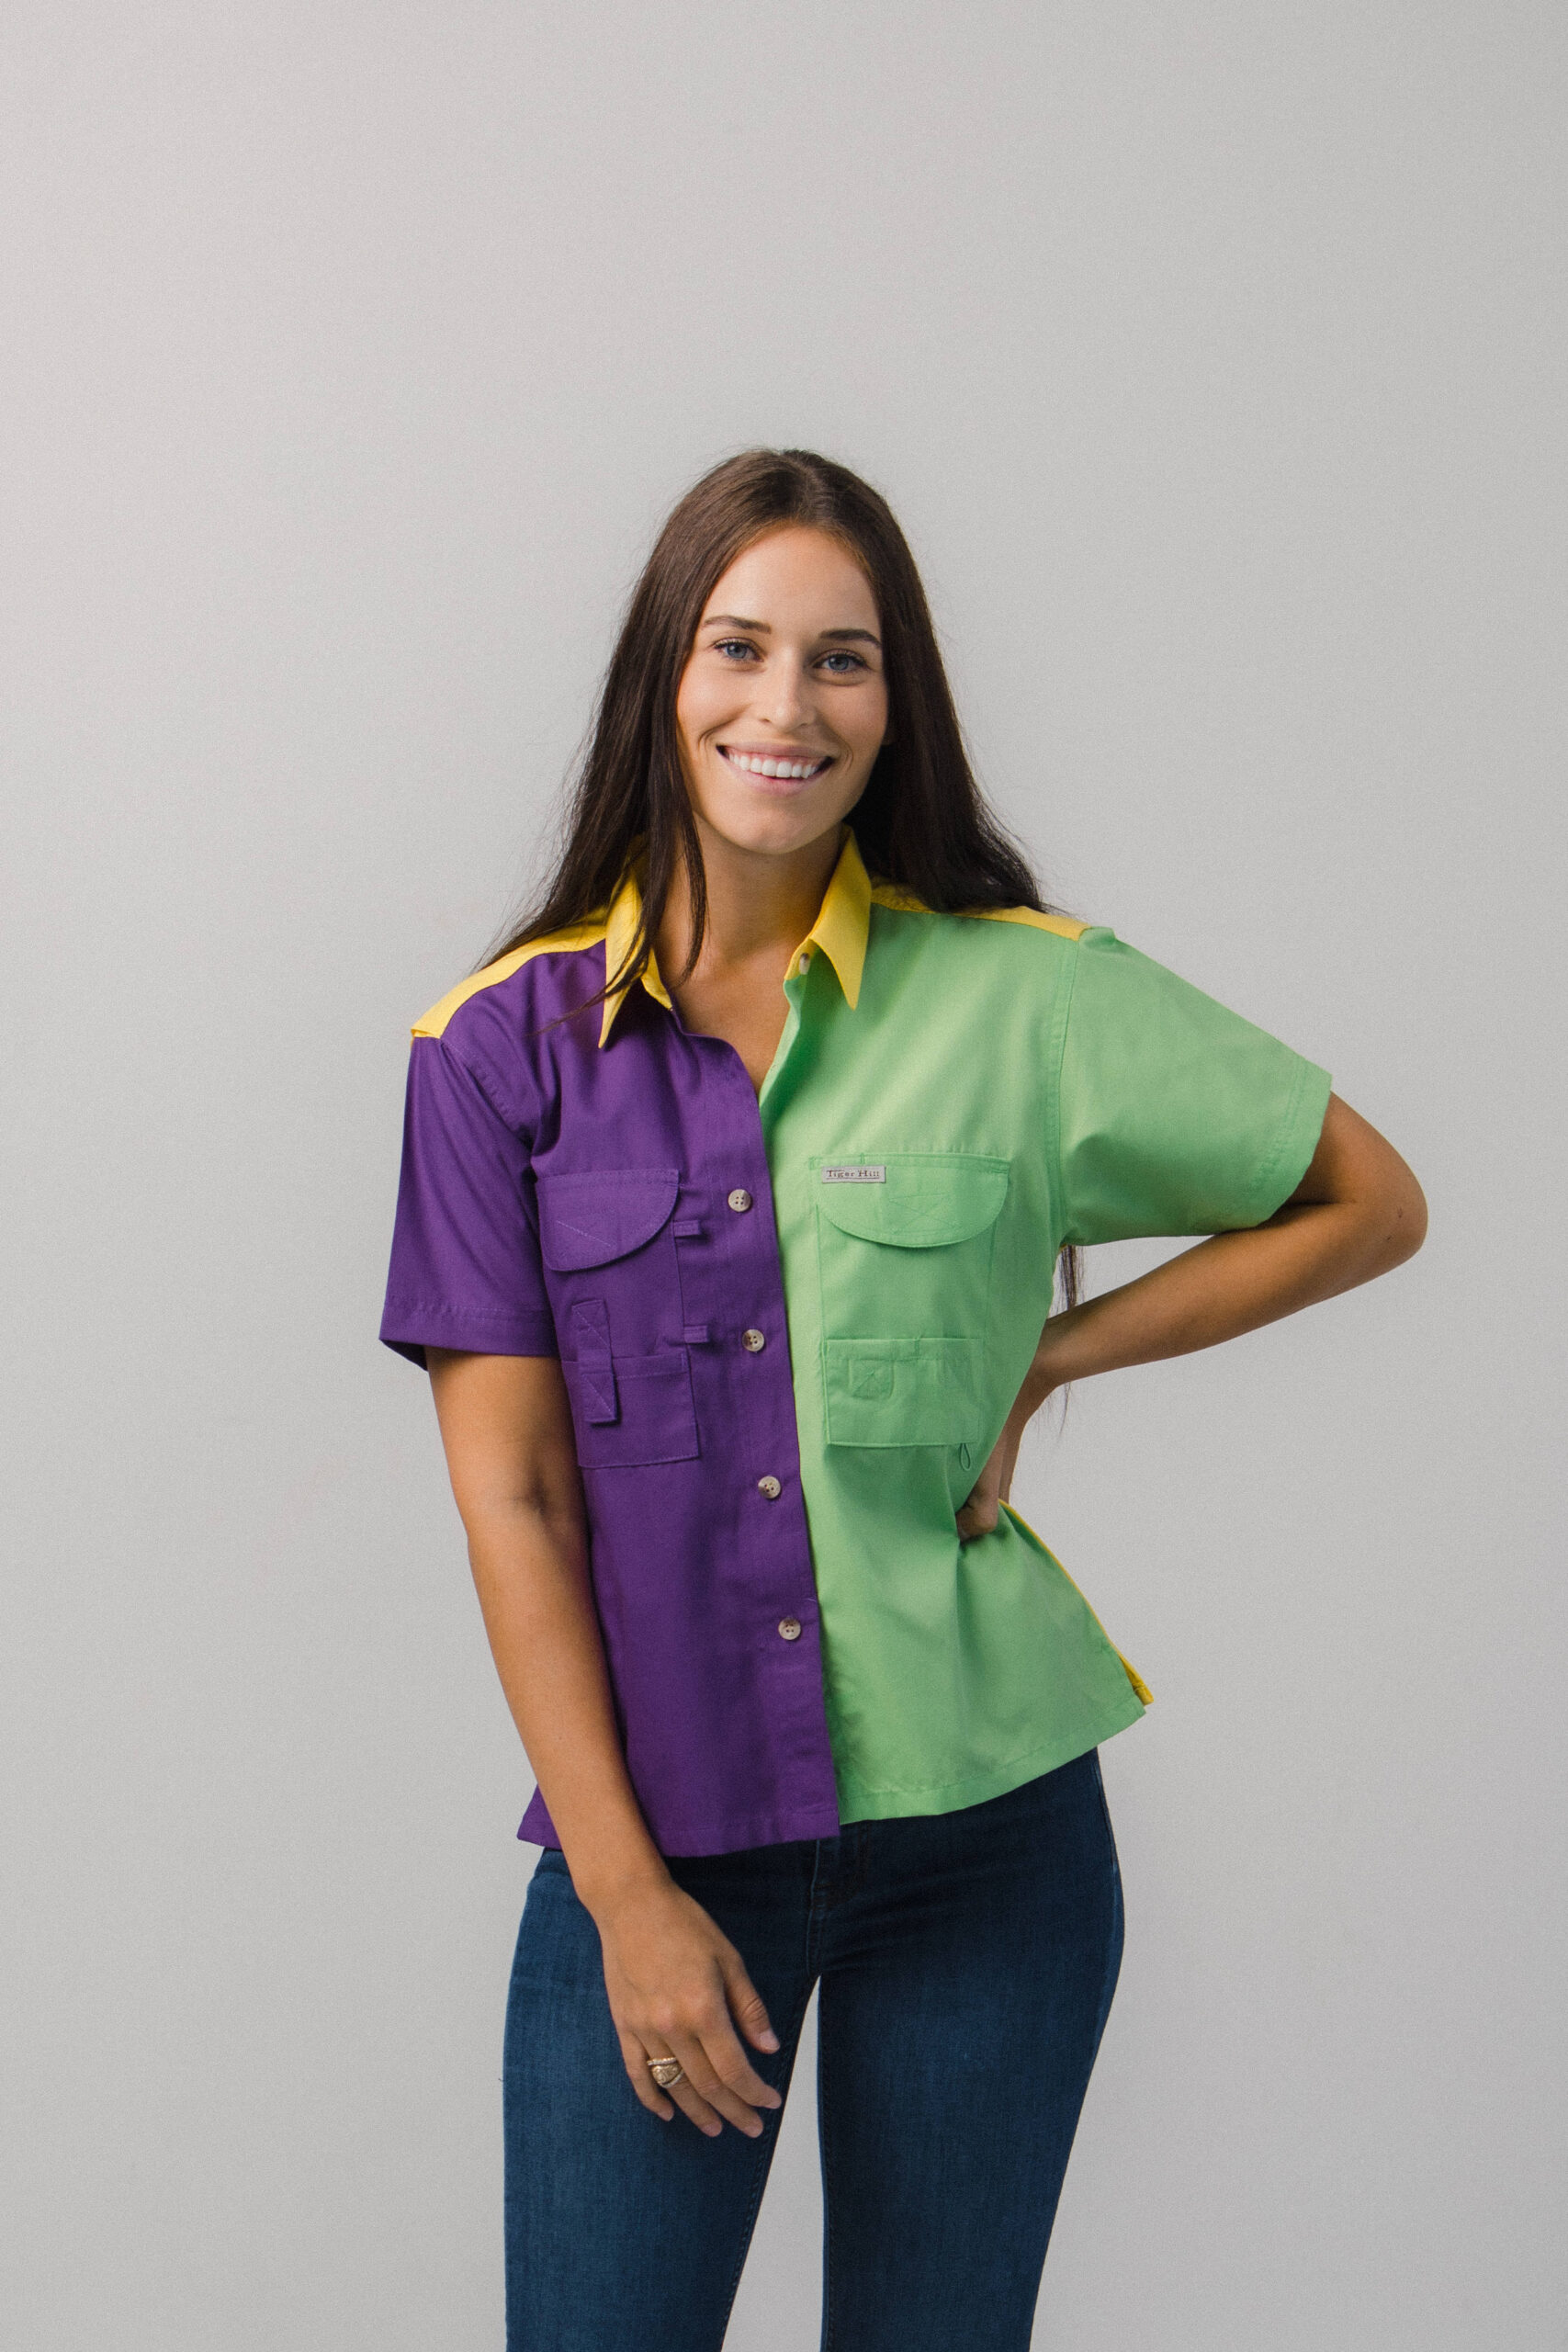 Habit Women's Light Purple Fishing & Outdoor Shirt Size M Lightweight  Button Up